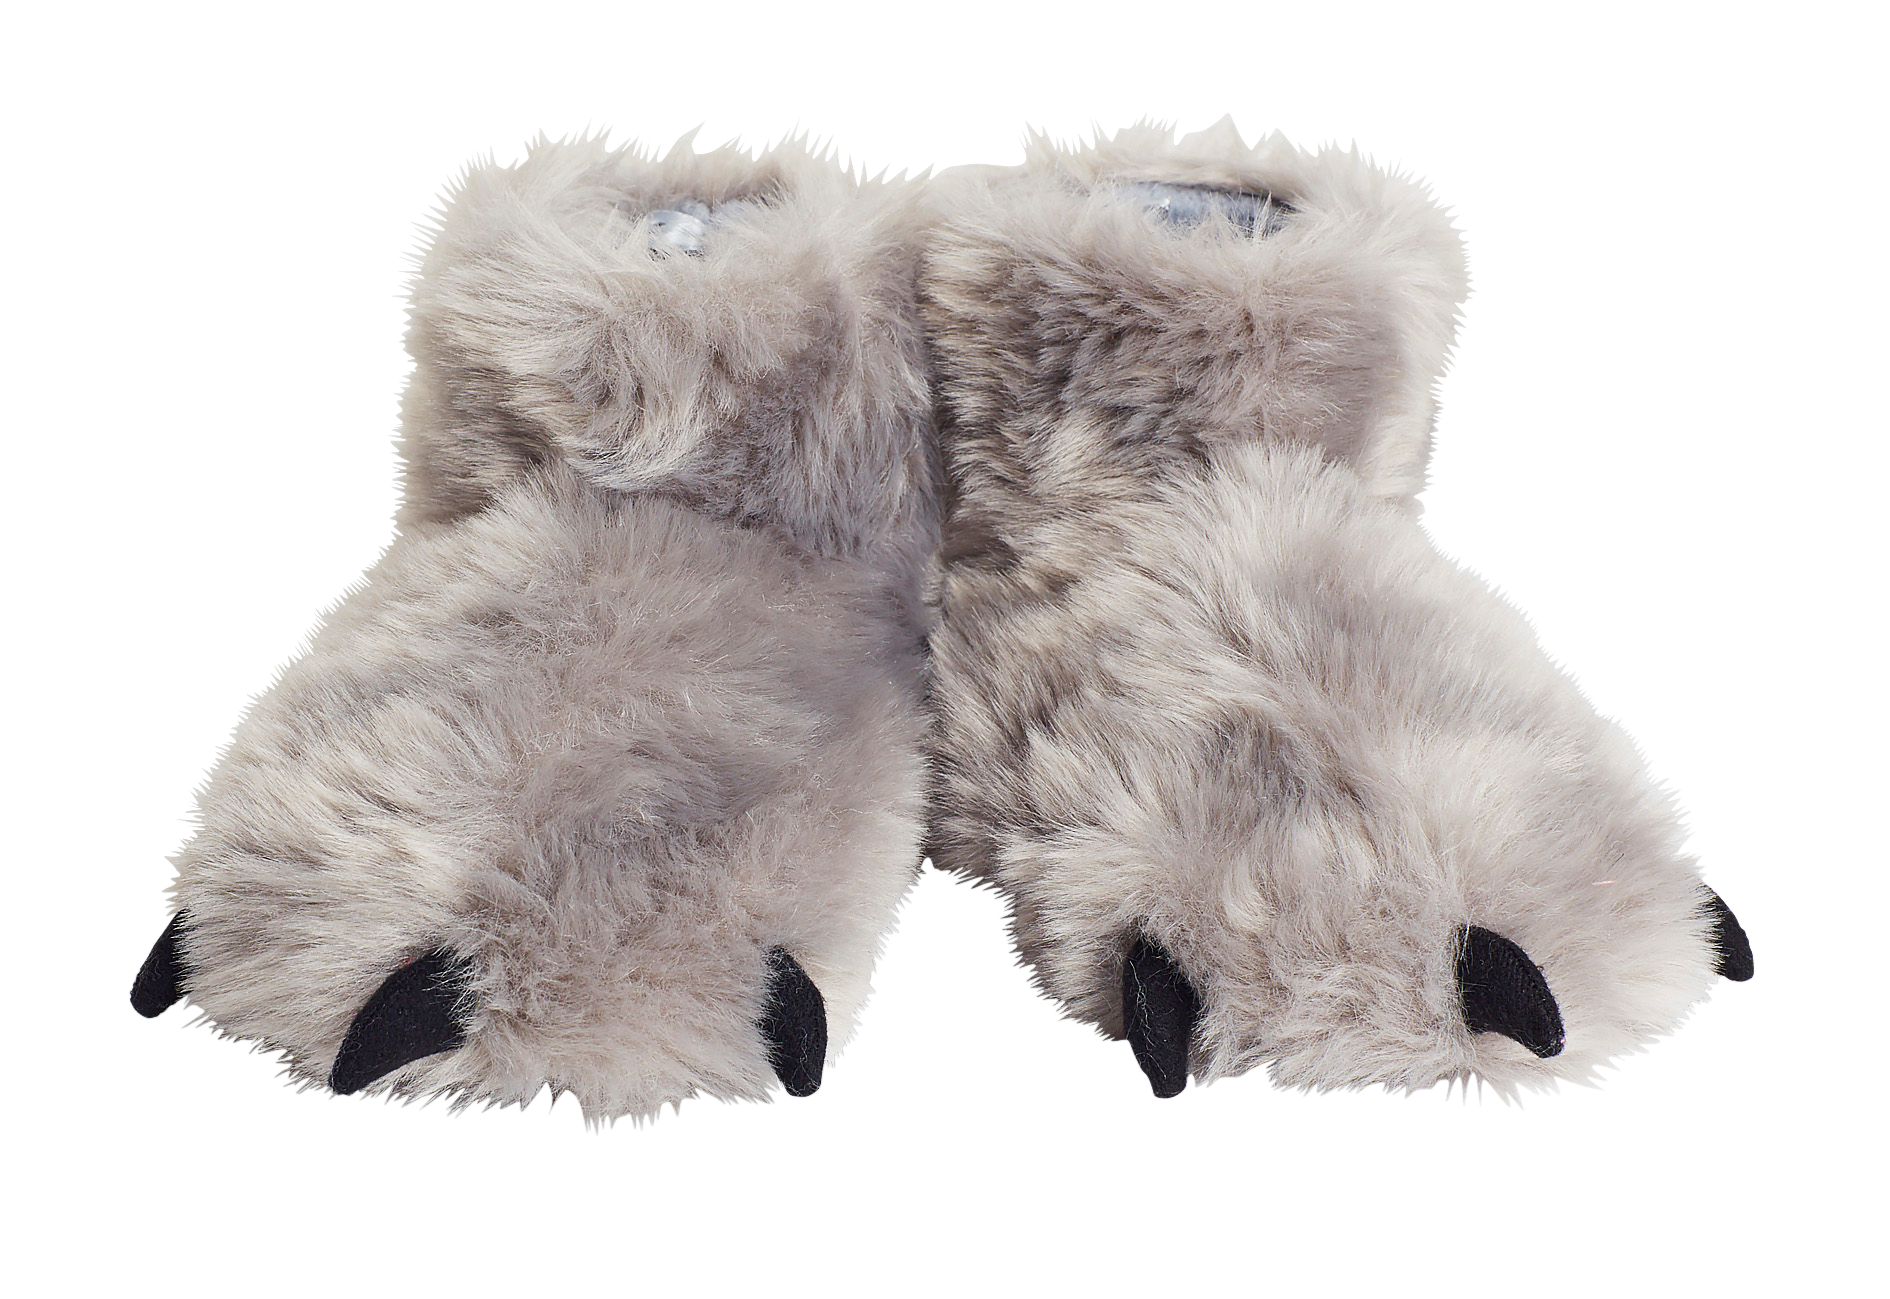 super fluffy slippers